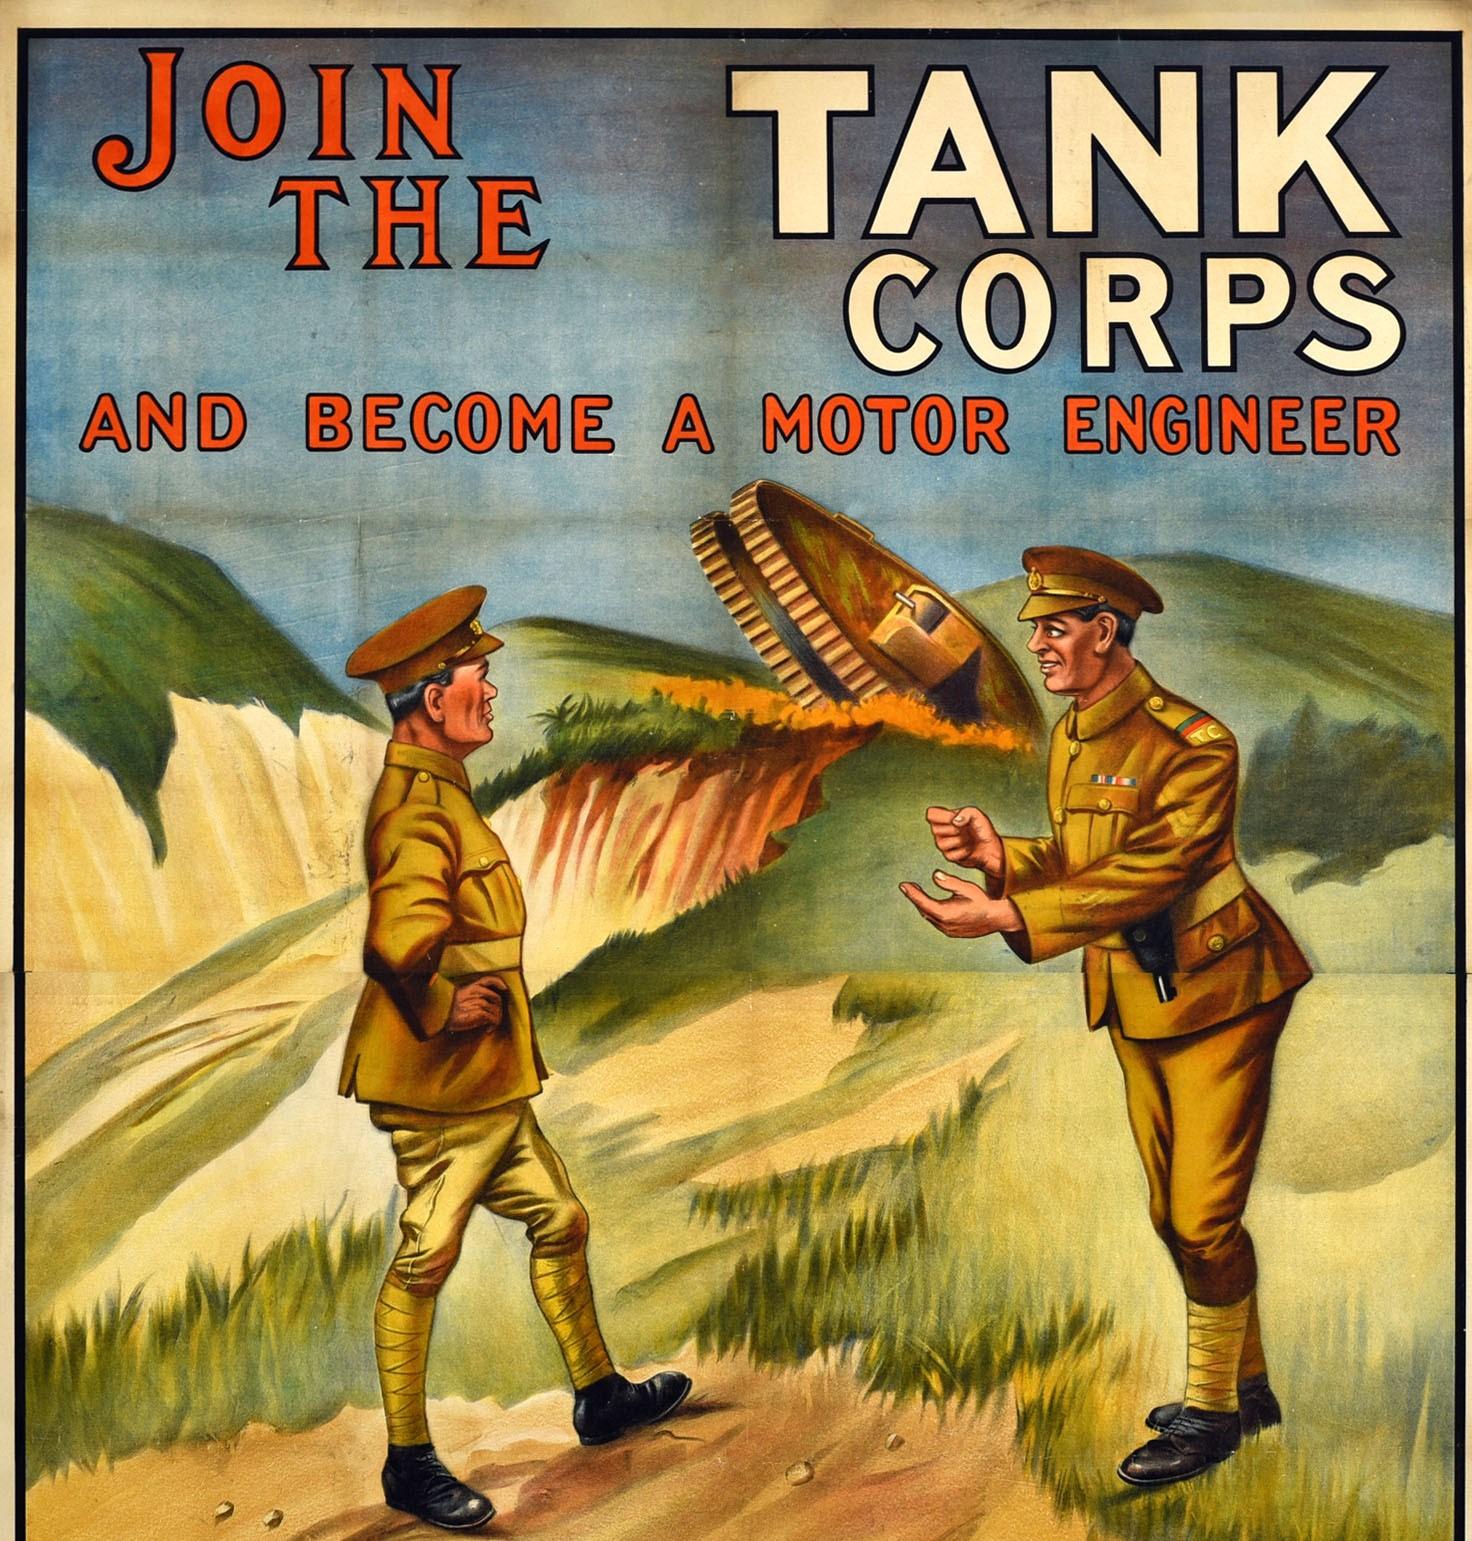 Seltenes originales britisches Rekrutierungsplakat - Join the Tank Corps and become a motor engineer - mit einer großartigen Illustration von zwei Soldaten, die sich an einem sandigen Hang unterhalten, während im Hintergrund ein Panzer über die